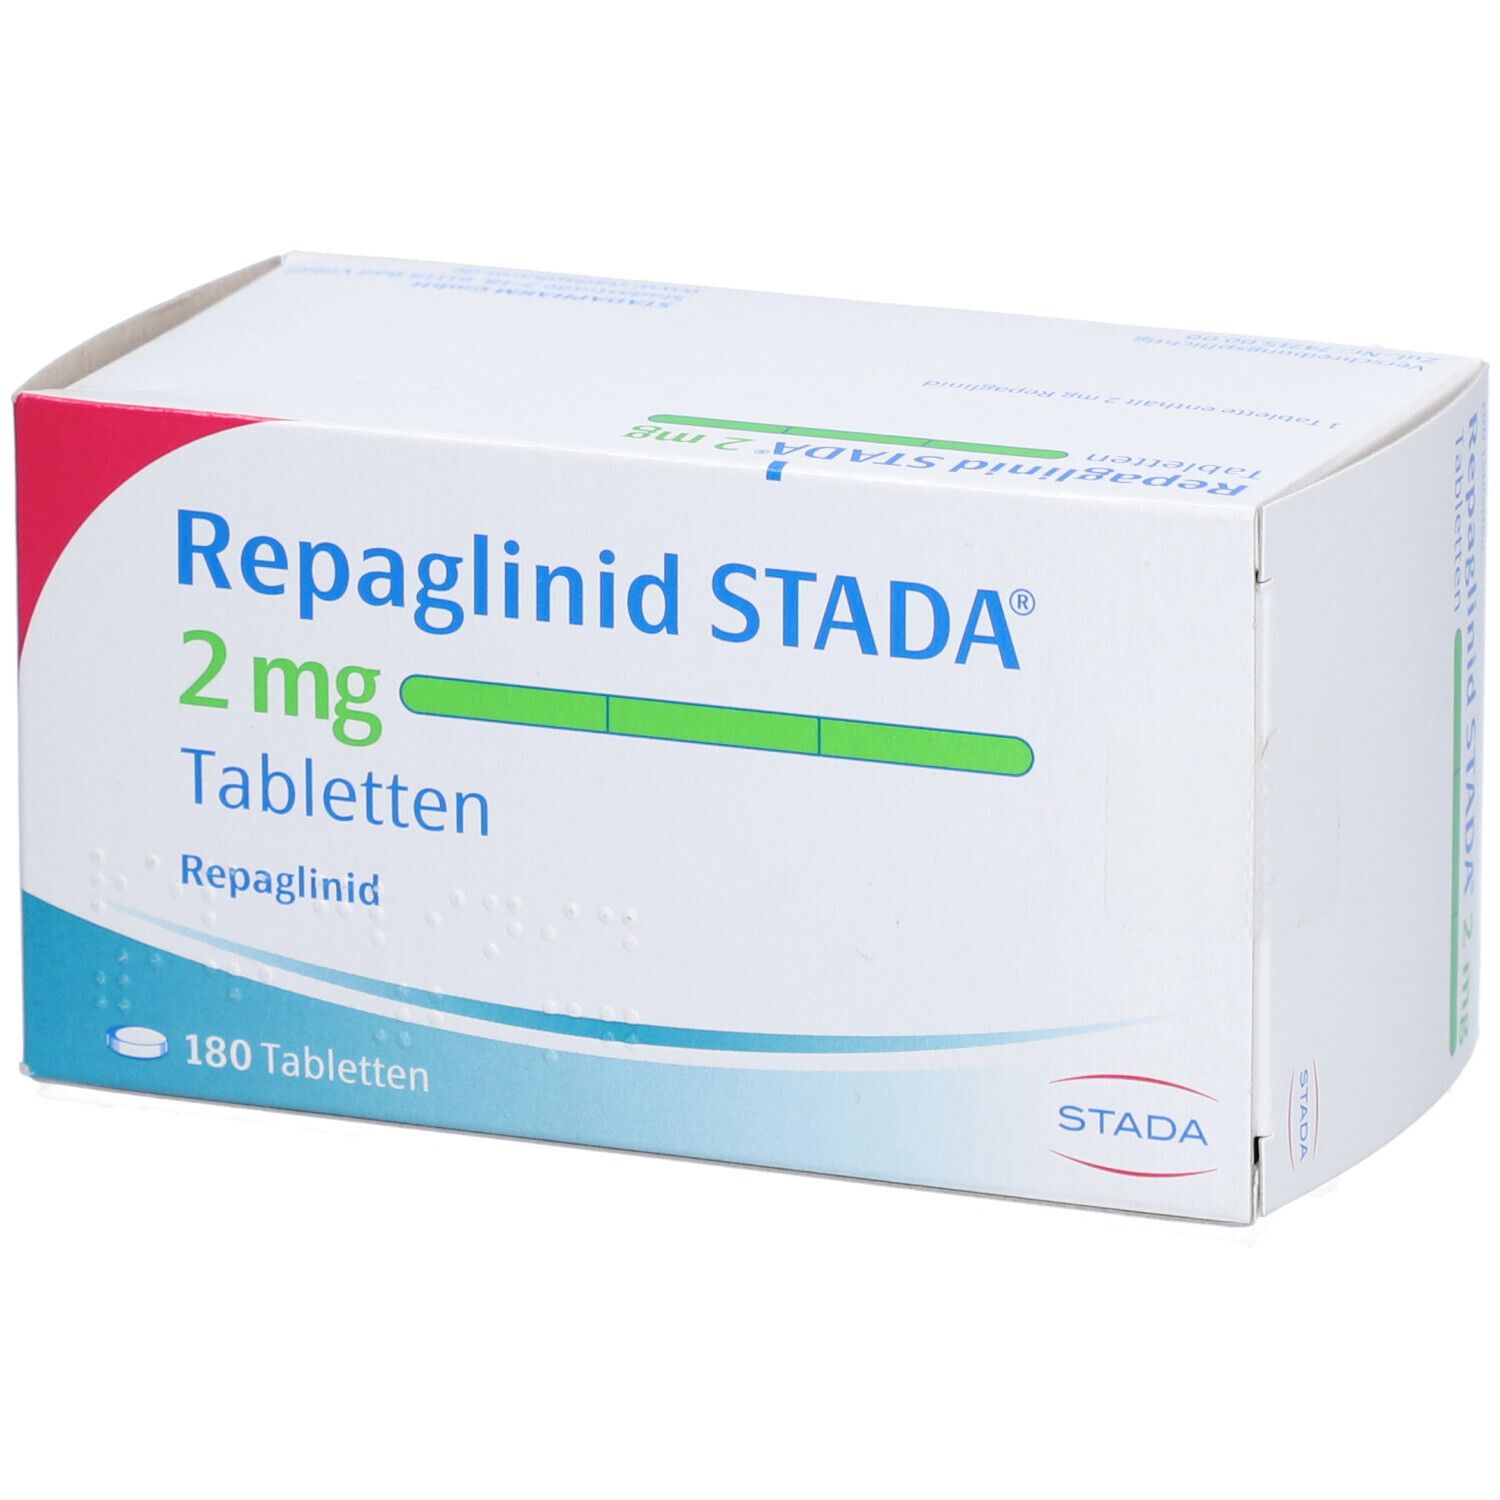 Repaglinid STADA® 2 mg